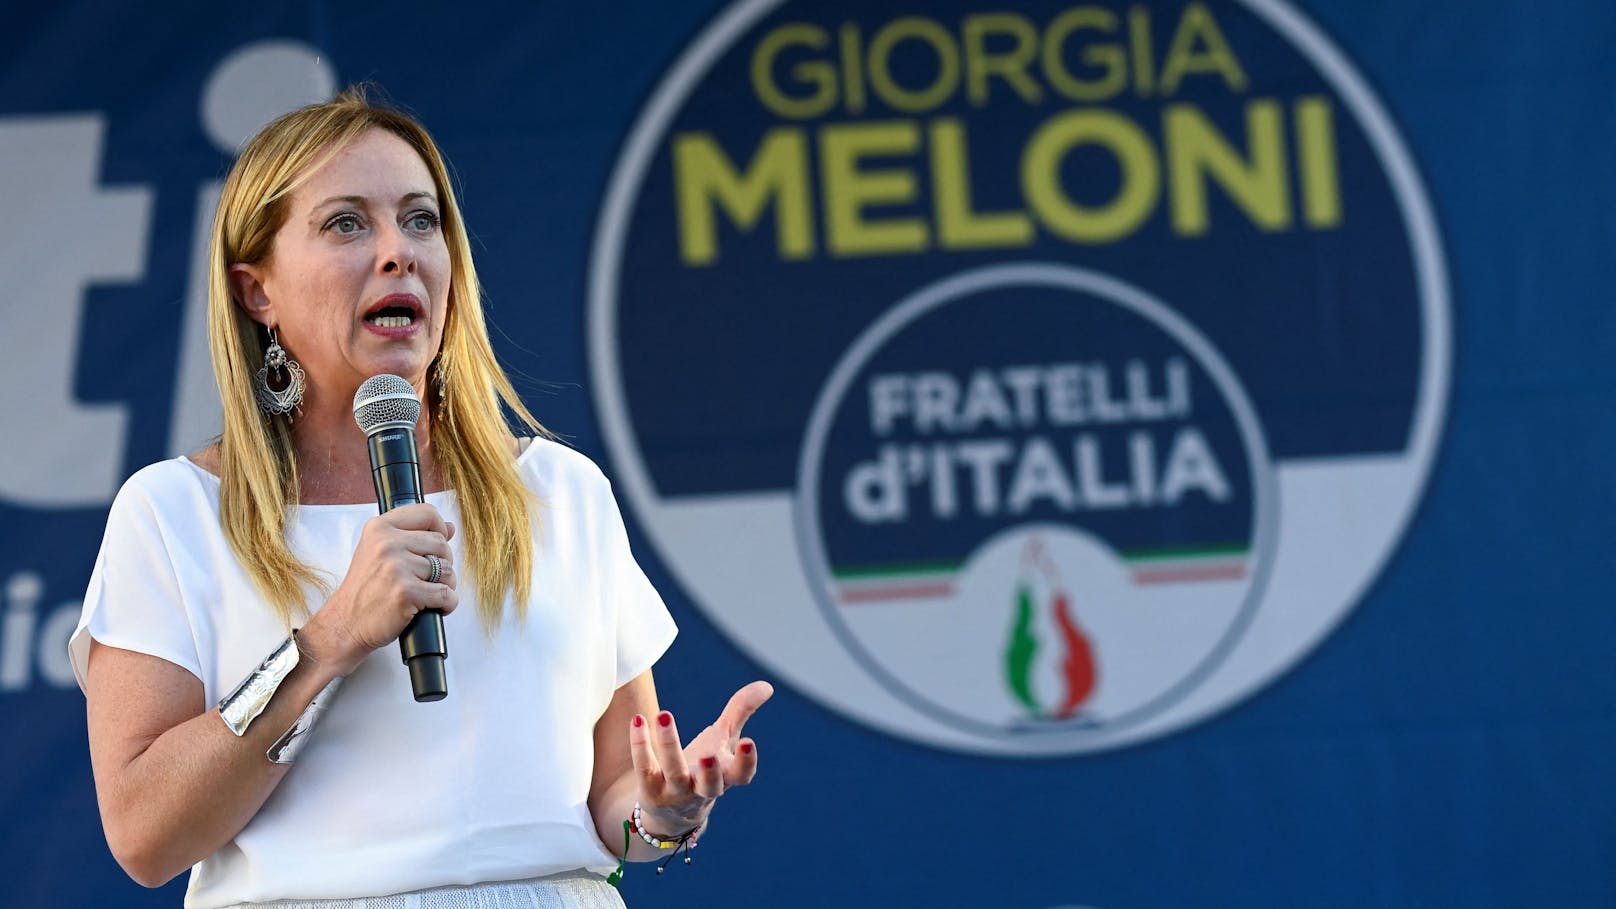 Premierministerin Meloni tritt bei EU-Wahl an